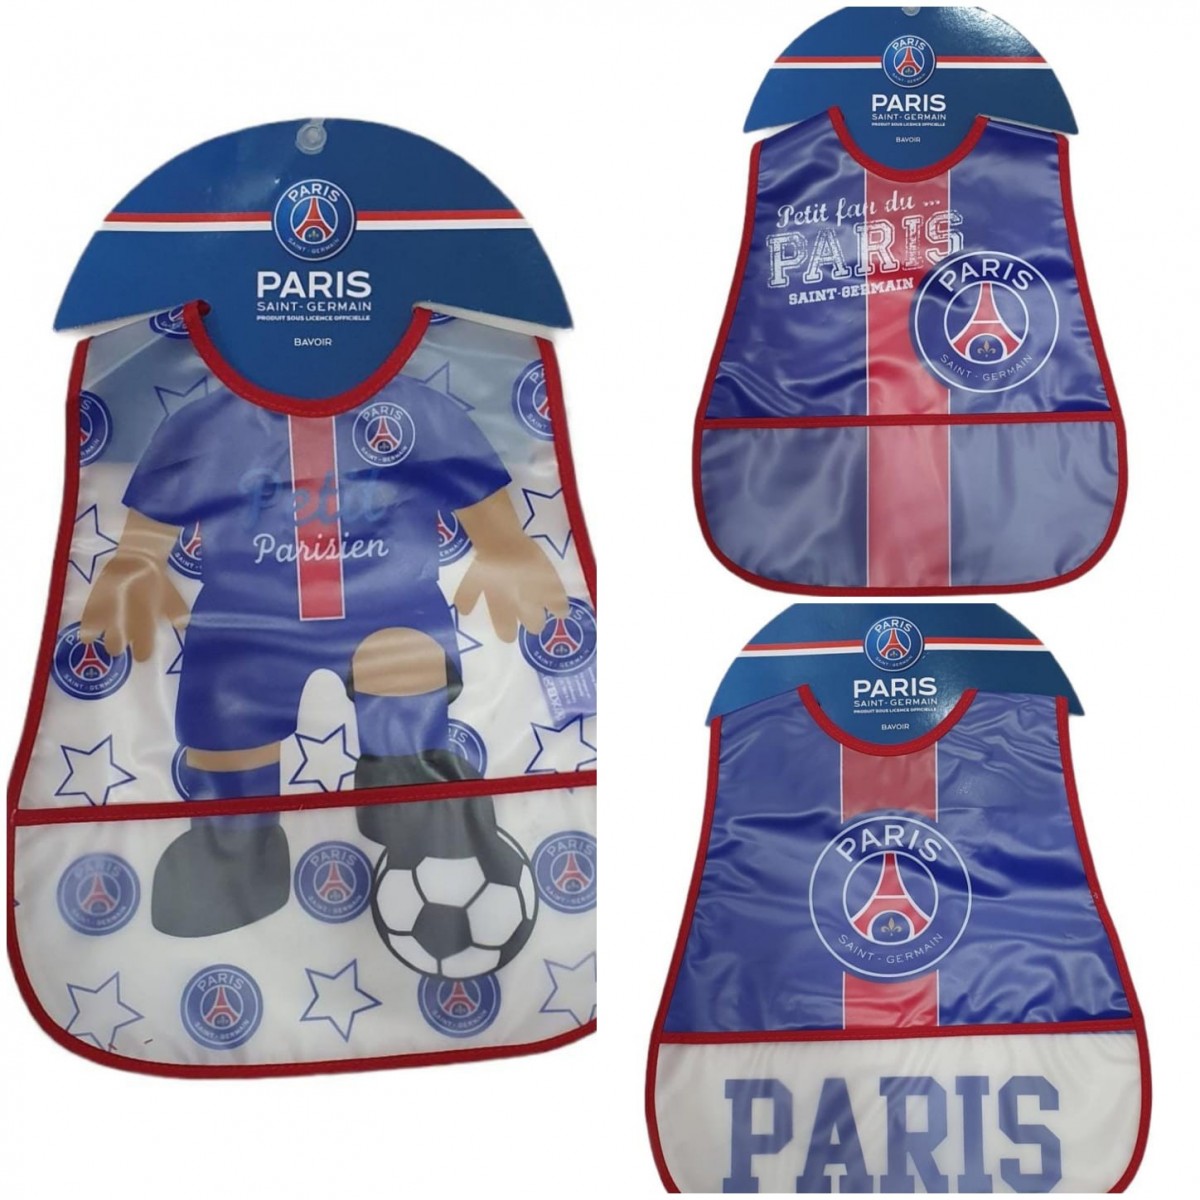 BODY PSG BÉBÉ + BAVOIR 2020 - Store officiel du Paris Saint-Germain